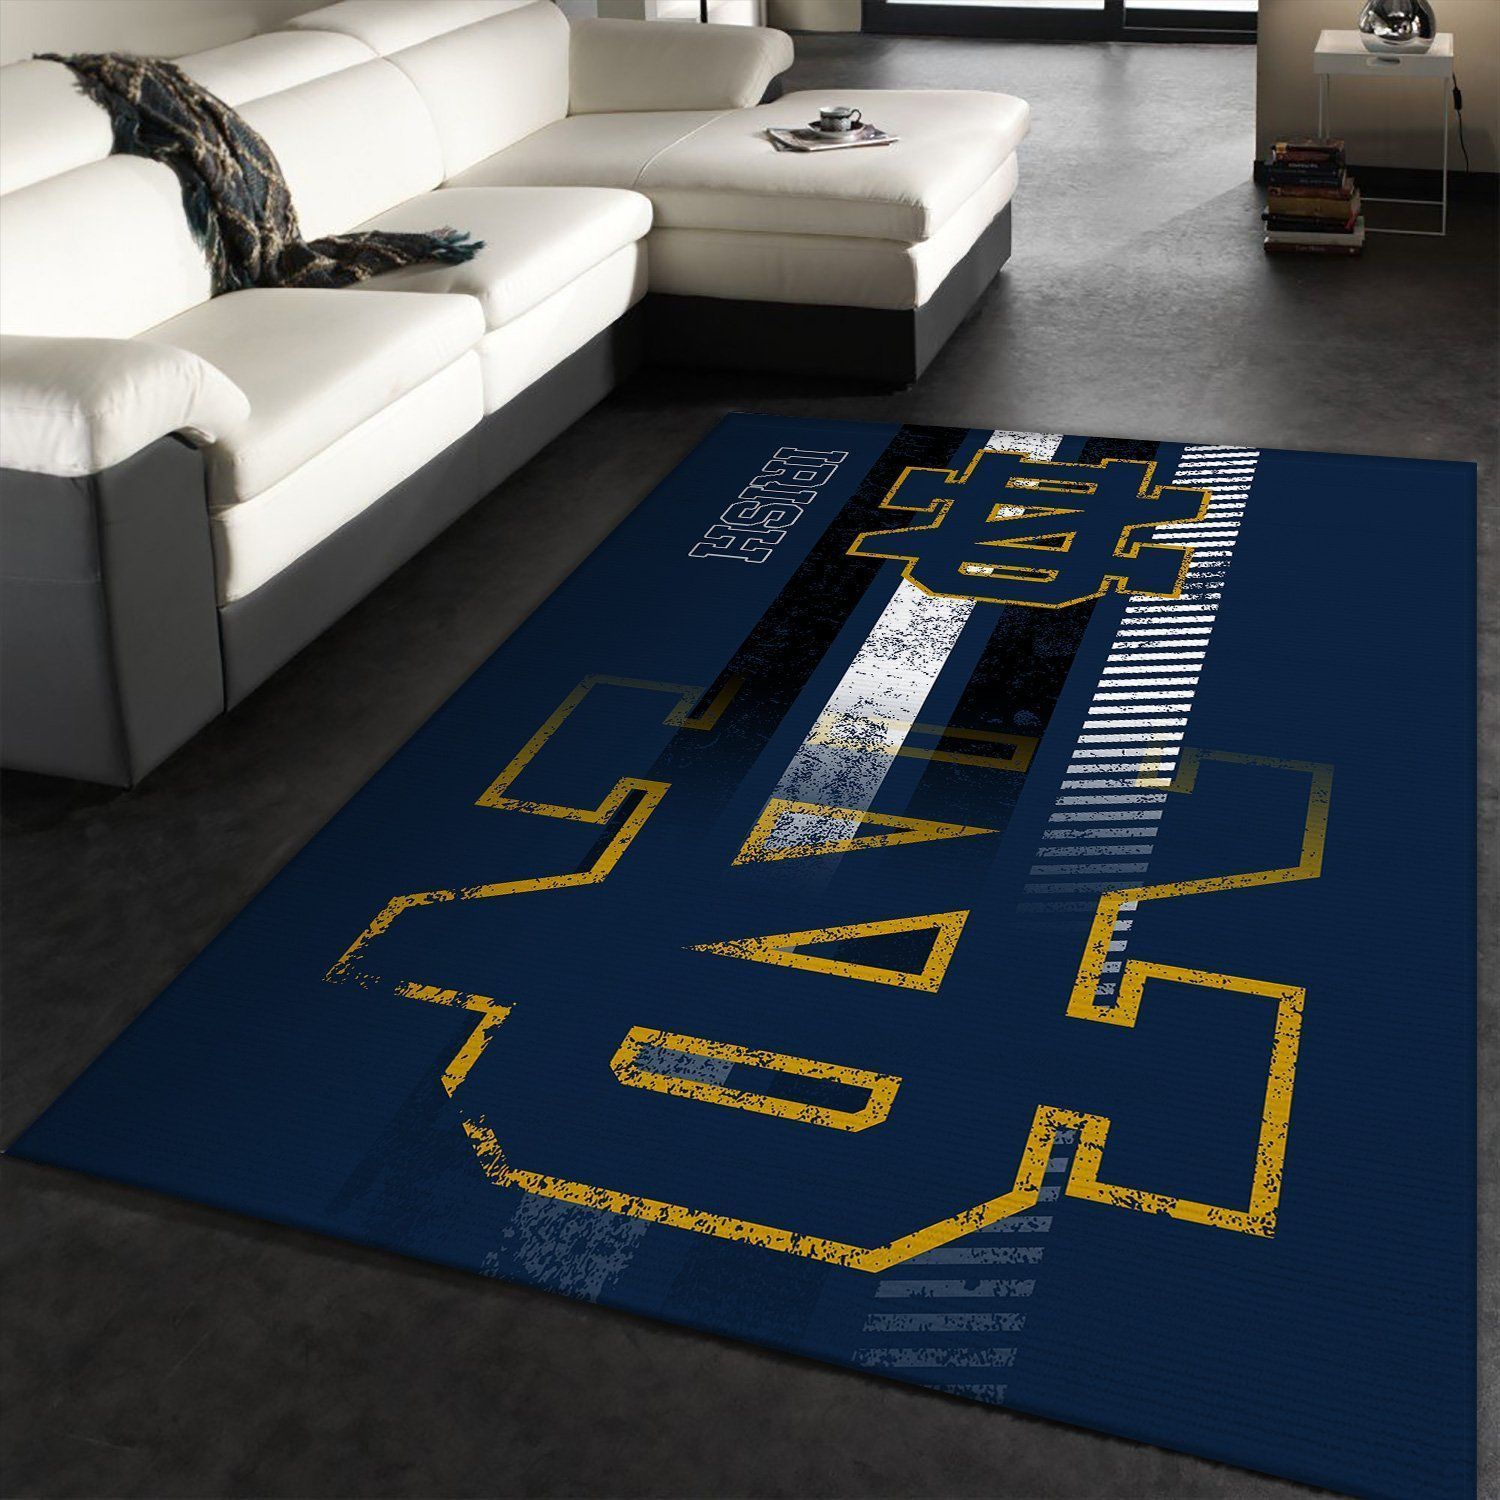 Notre Dame Fighting Irish Rug Room Carpet Sport Custom Area Floor Mat Home Decor - Indoor Outdoor Rugs